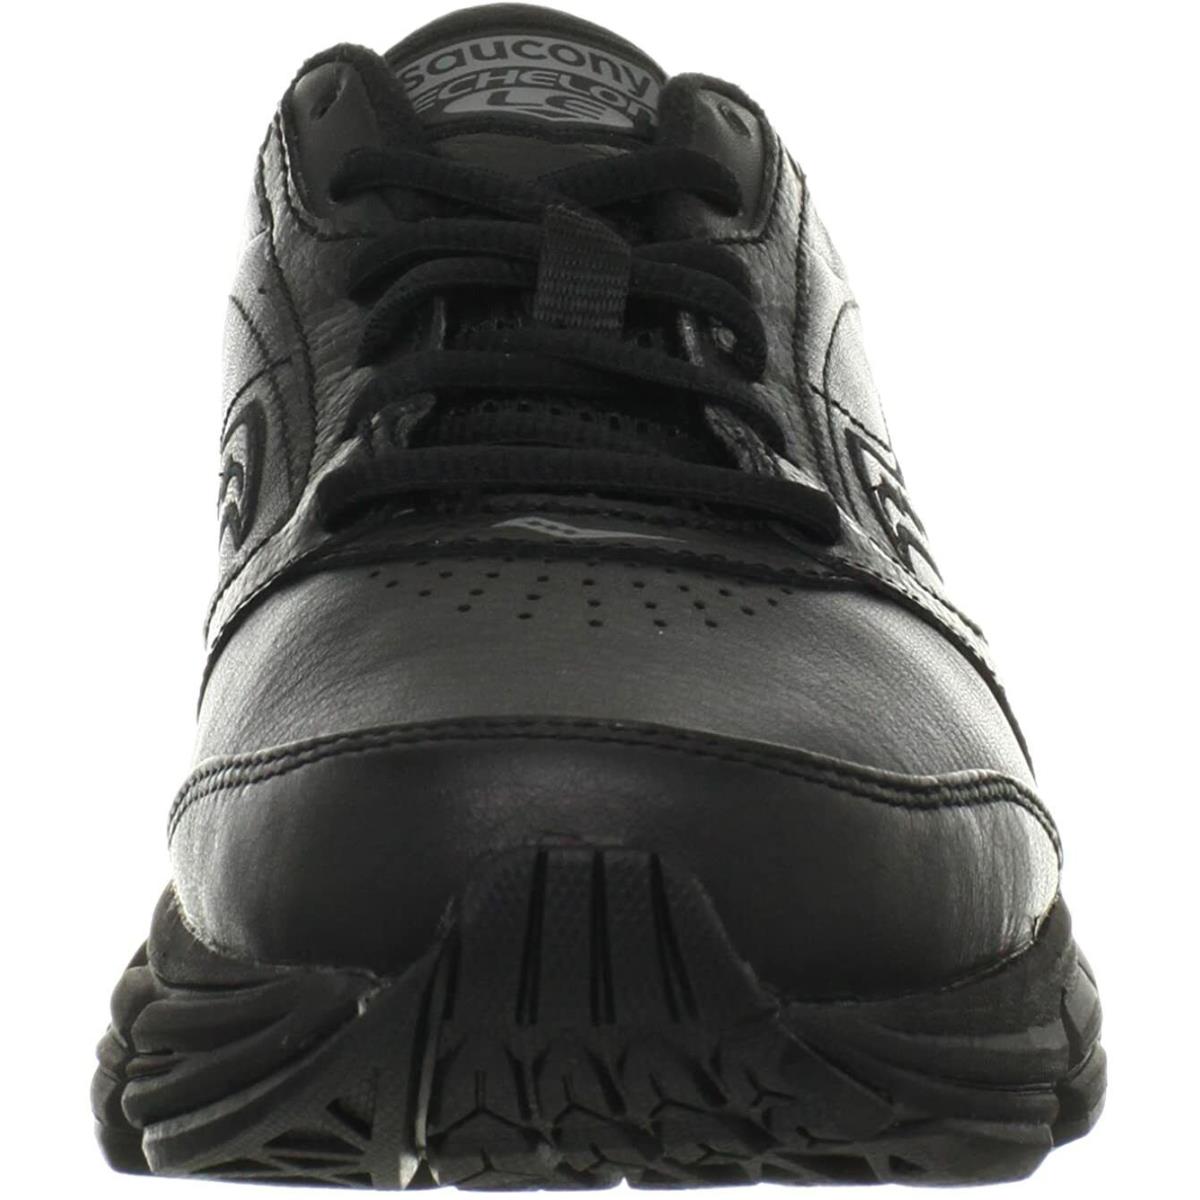 Saucony shoes  - Black 0